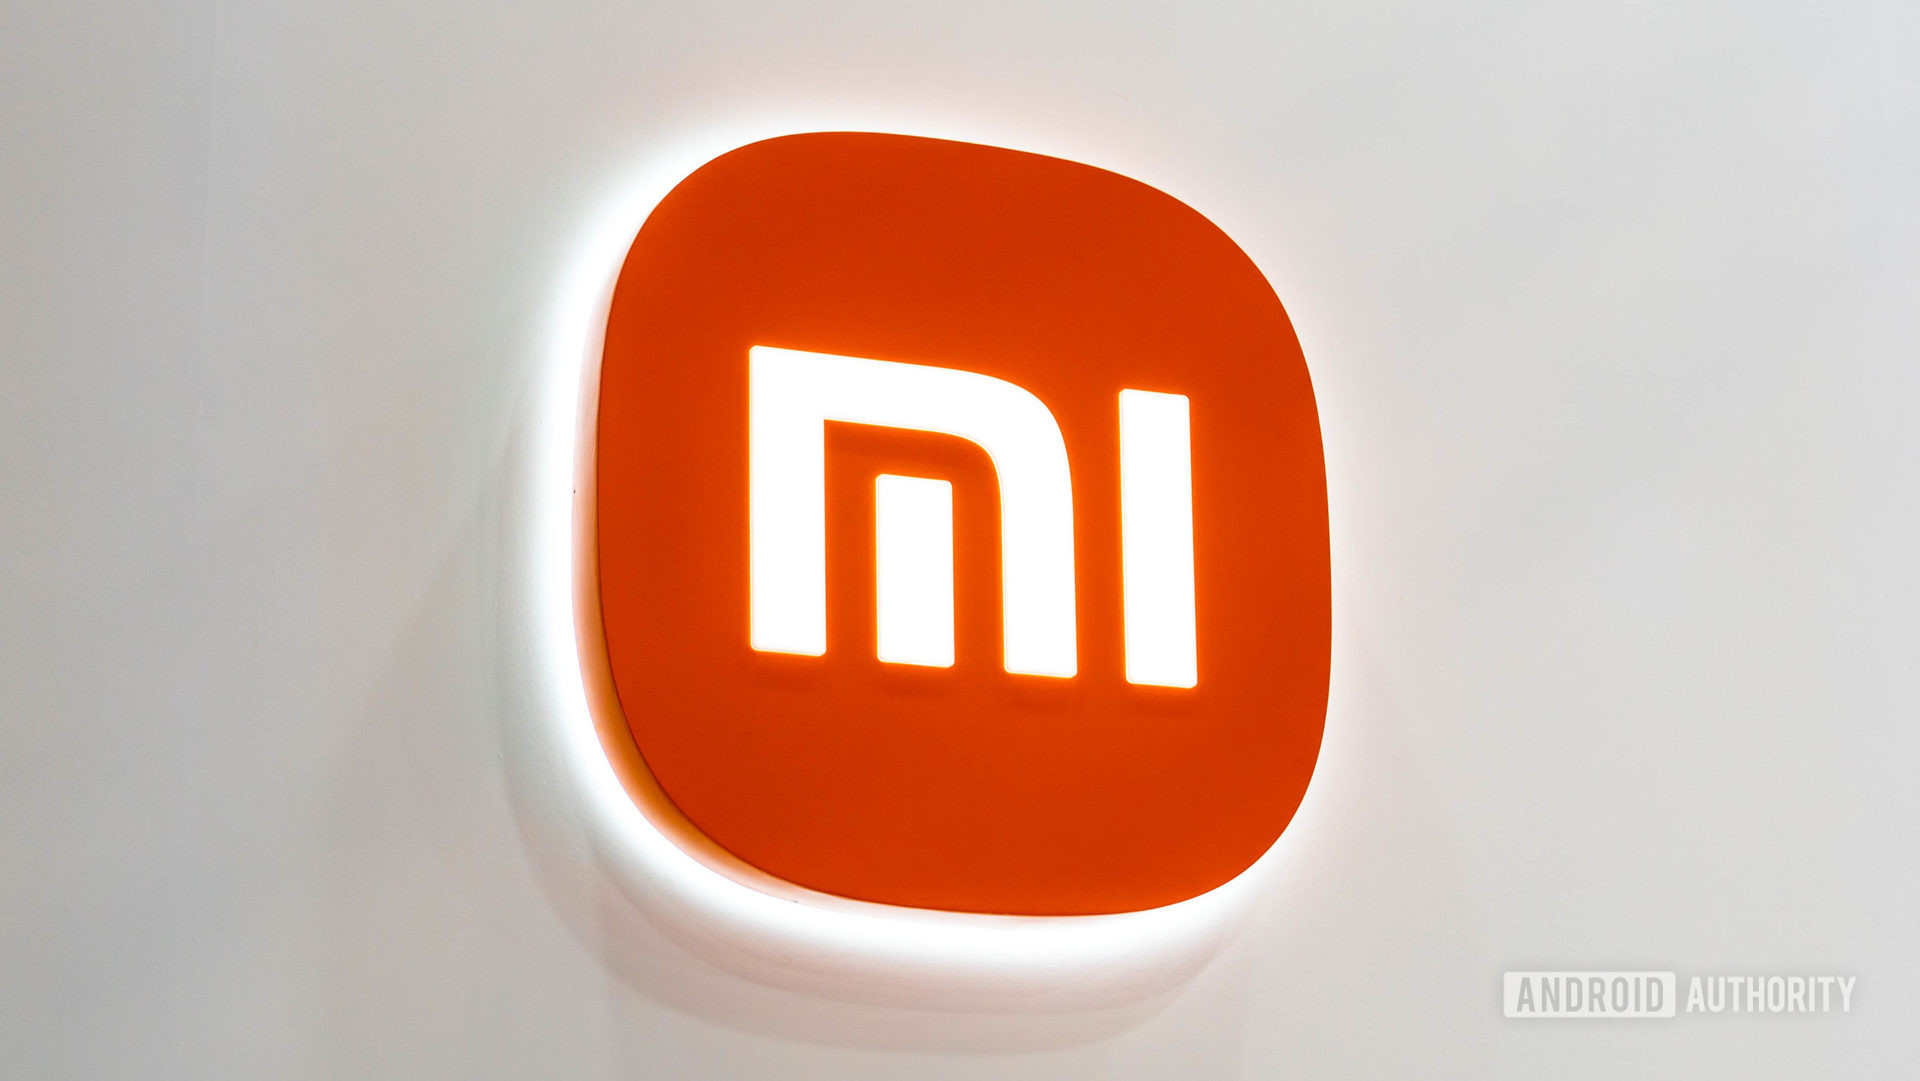 Xiaomi Mi logo on the white wall